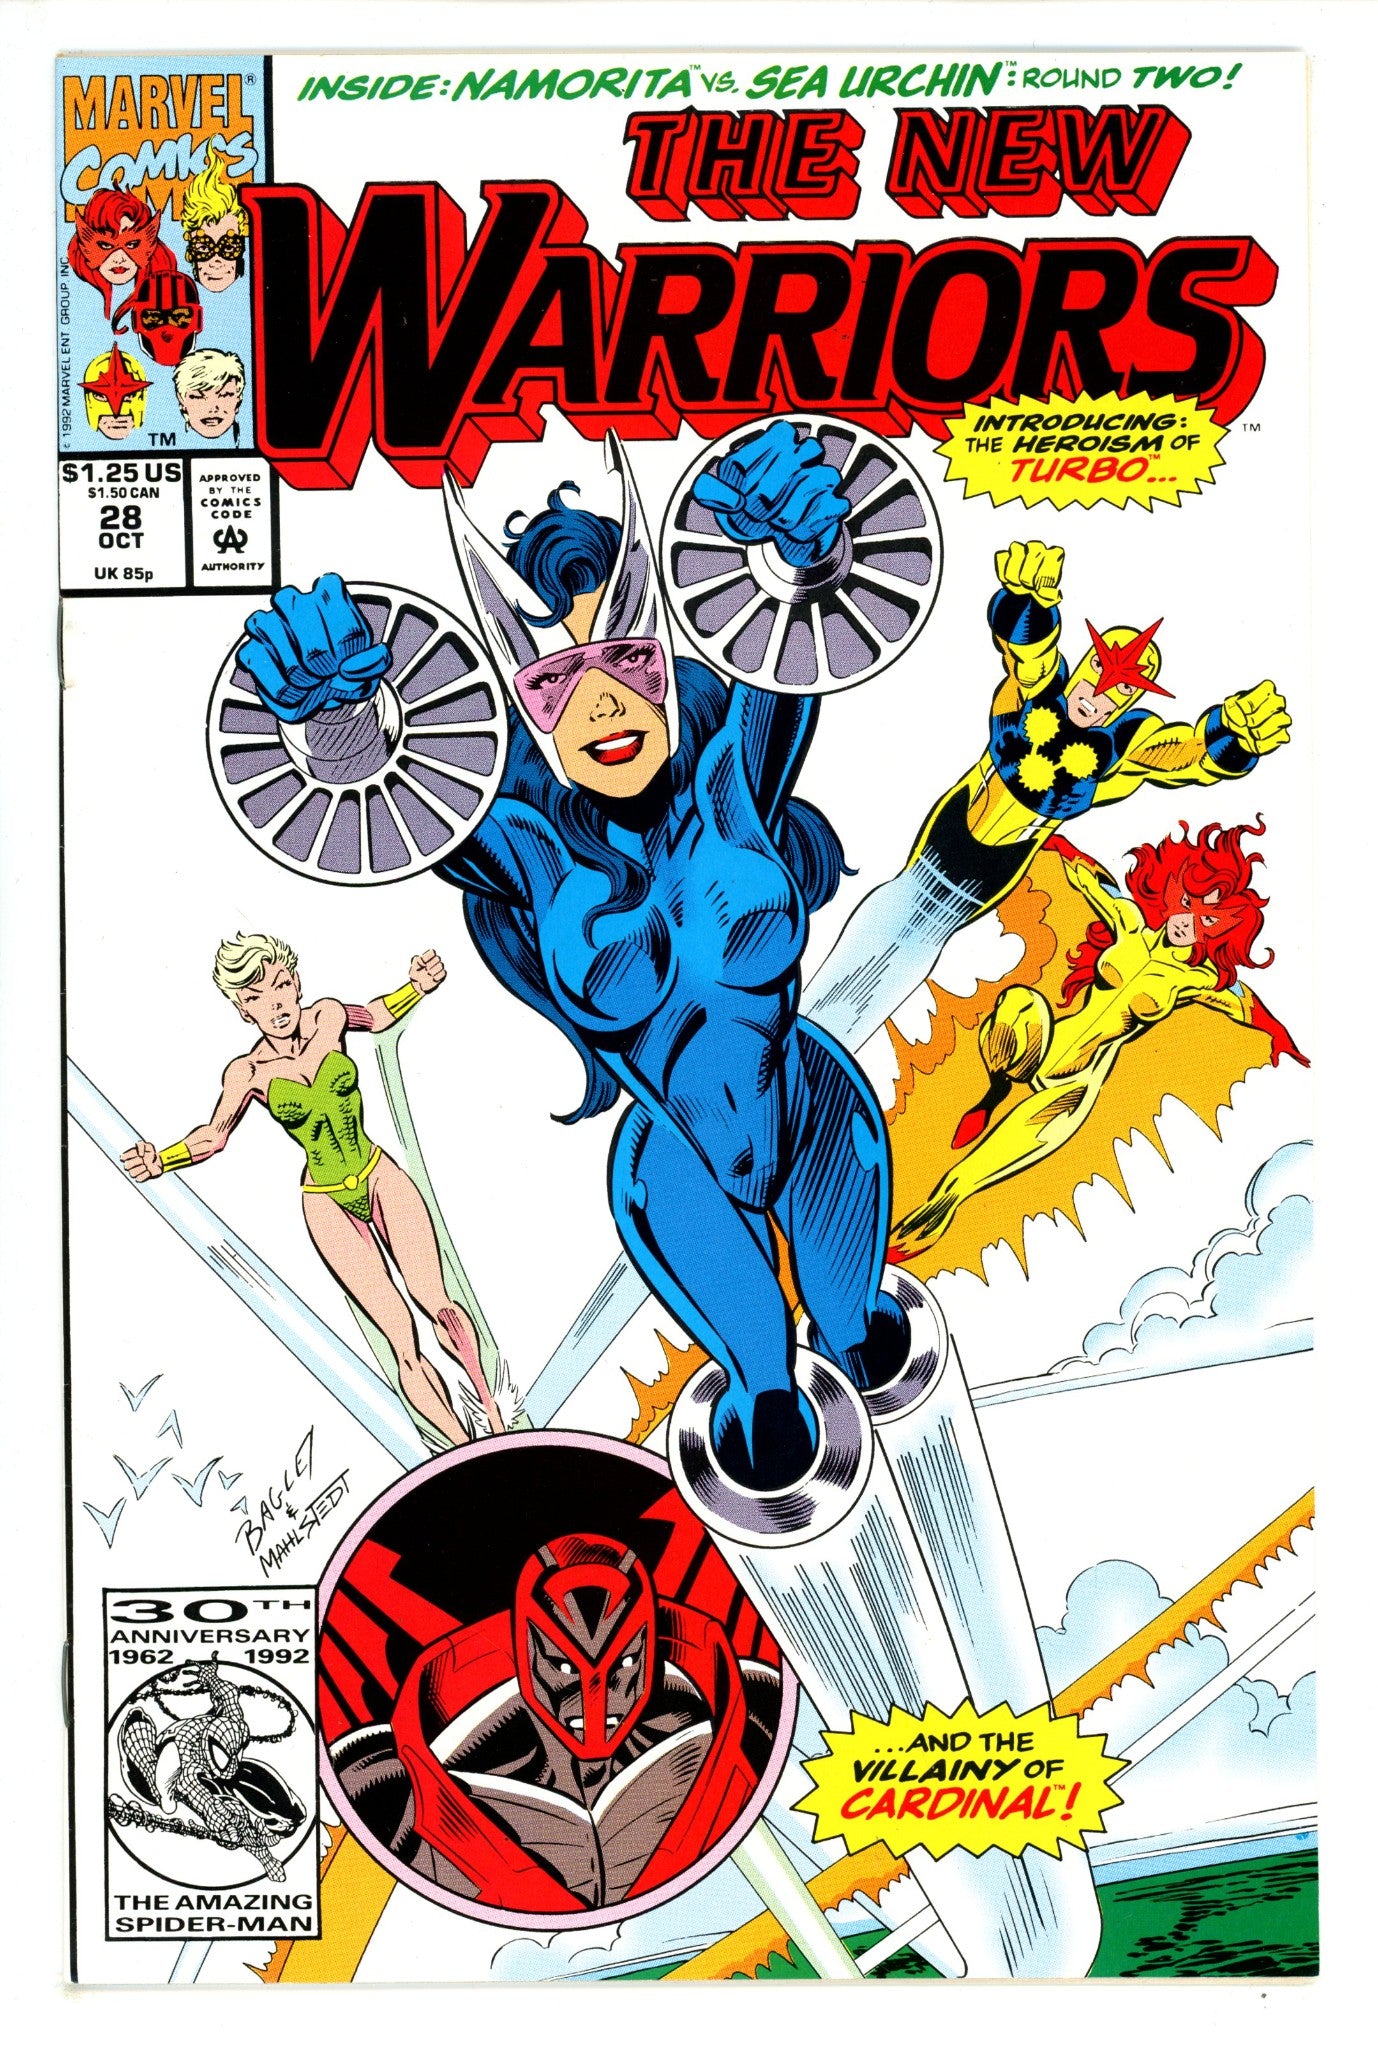 The New Warriors Vol 1 28 (1992)